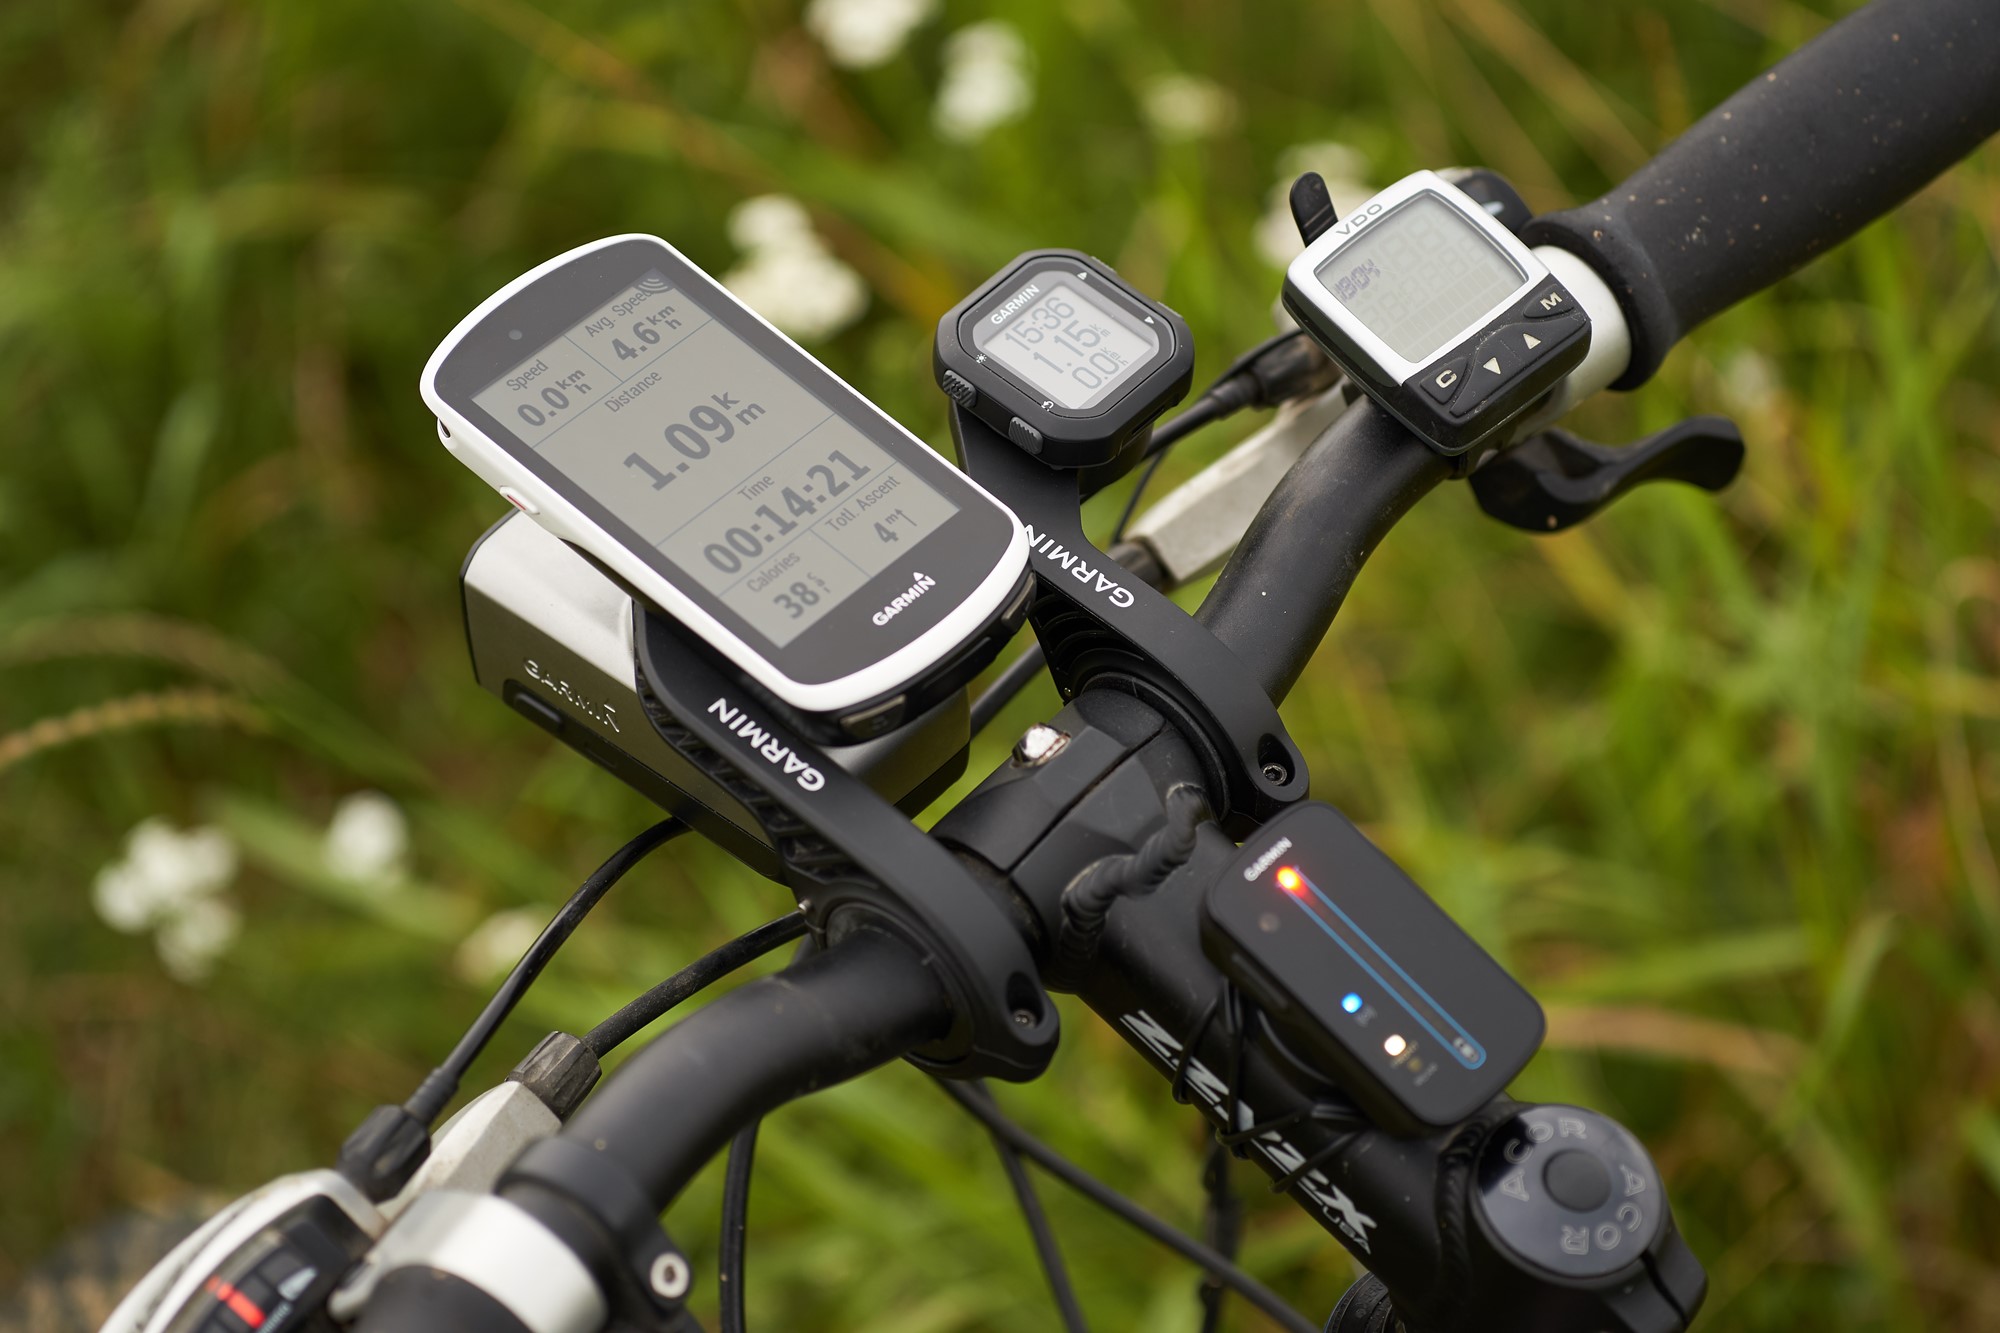 Koje su prednosti prave biciklističke navigacije u odnosu na mobitele? -  Recenzije @ Bug.hr